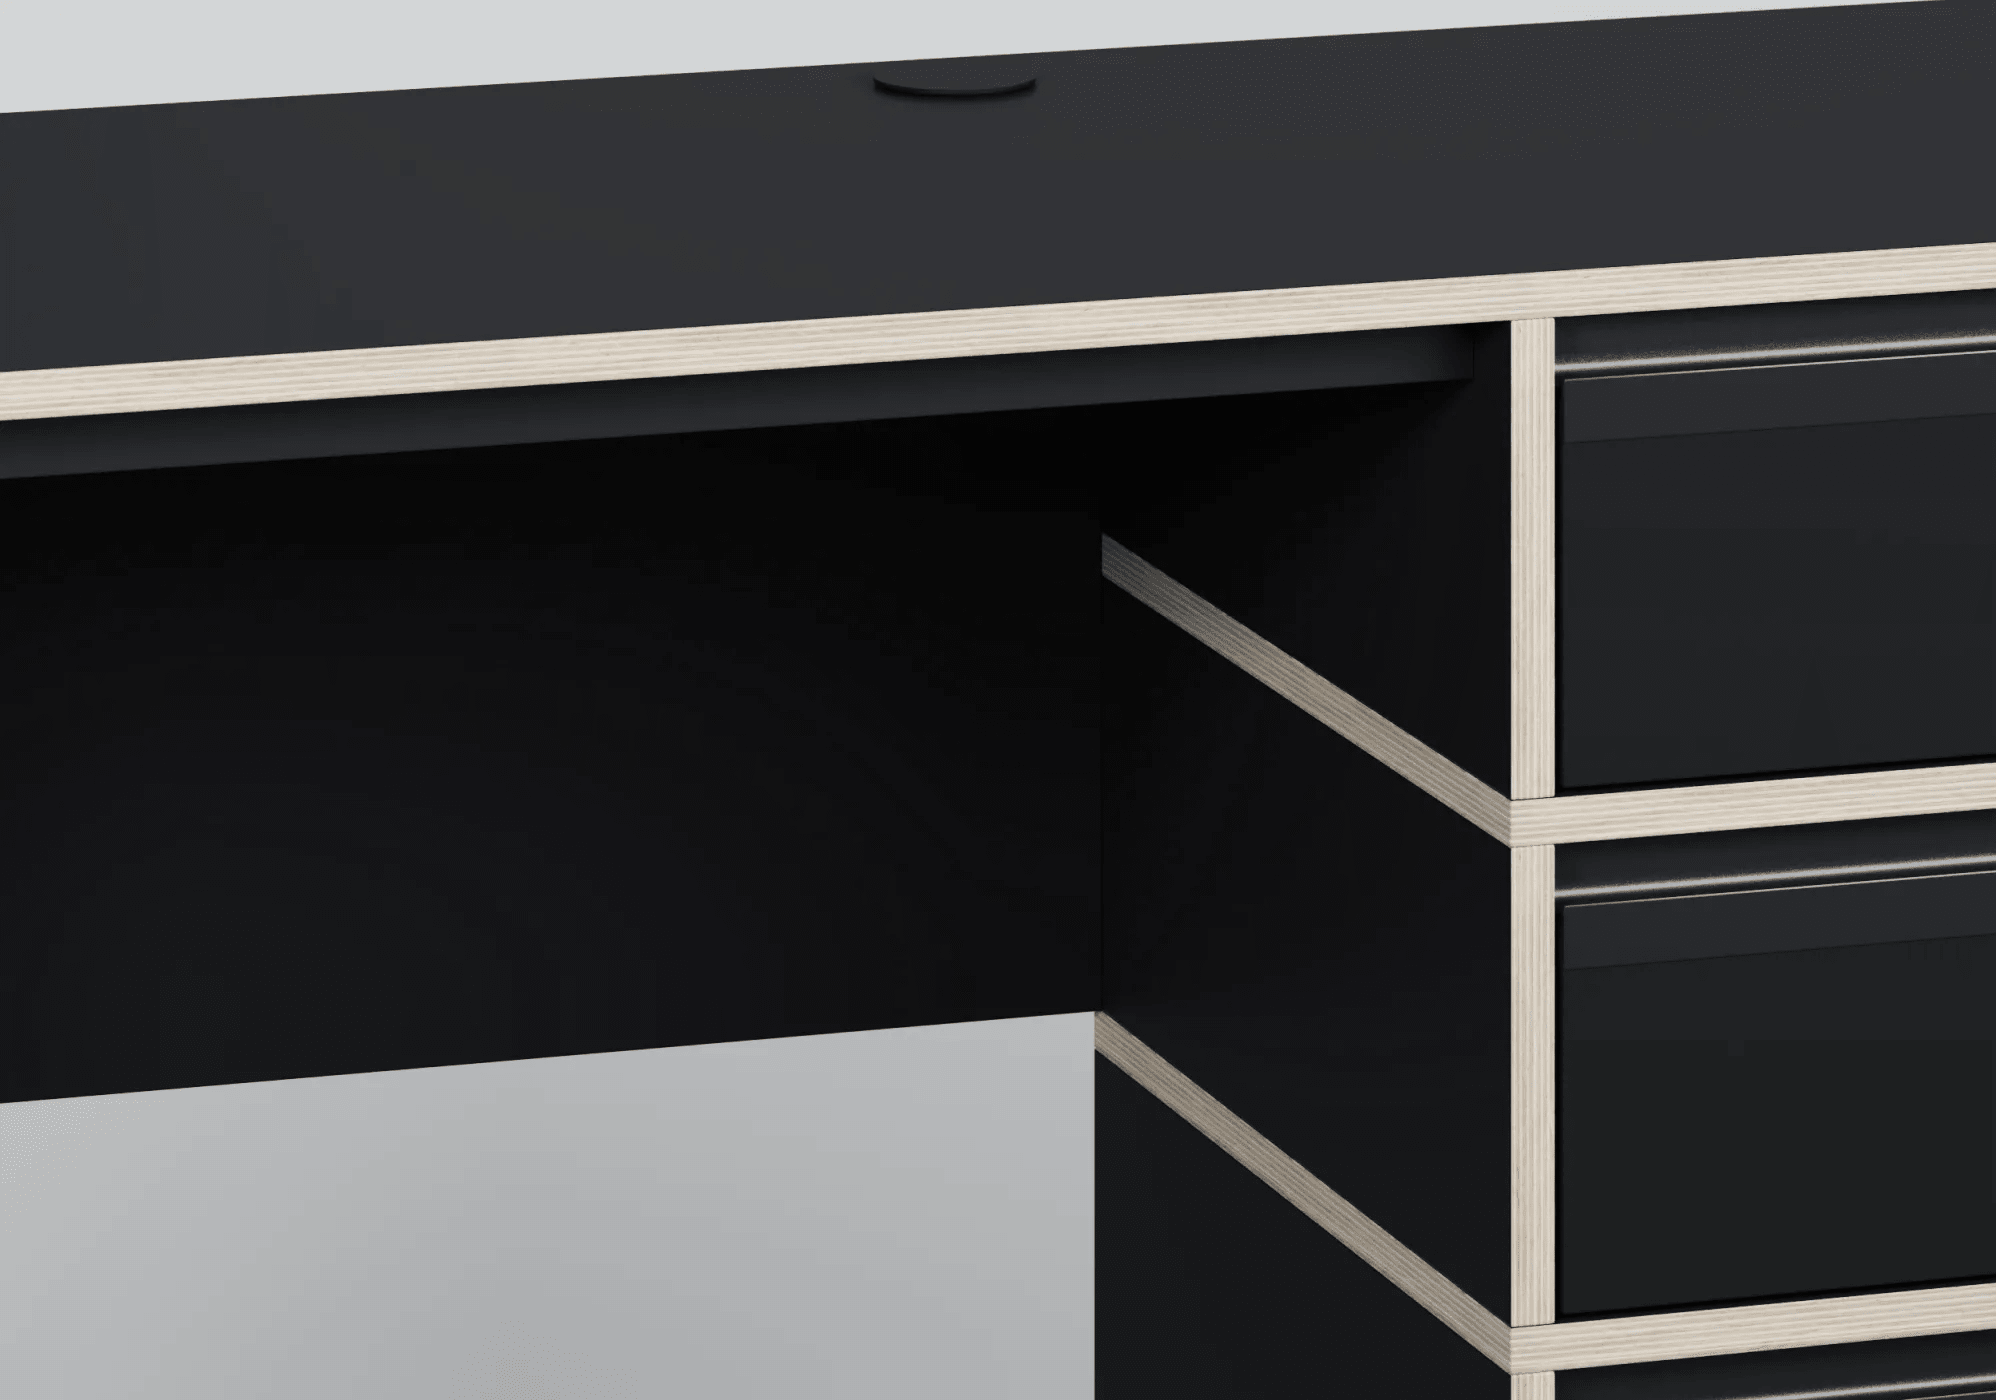 Grosses Schwarze Multiplex-Platte Schreibtisch mit Türen, Ruckwanden, Kabelmanagement und Oberes Fachs multiplexplatten - 102x73x50cm 4